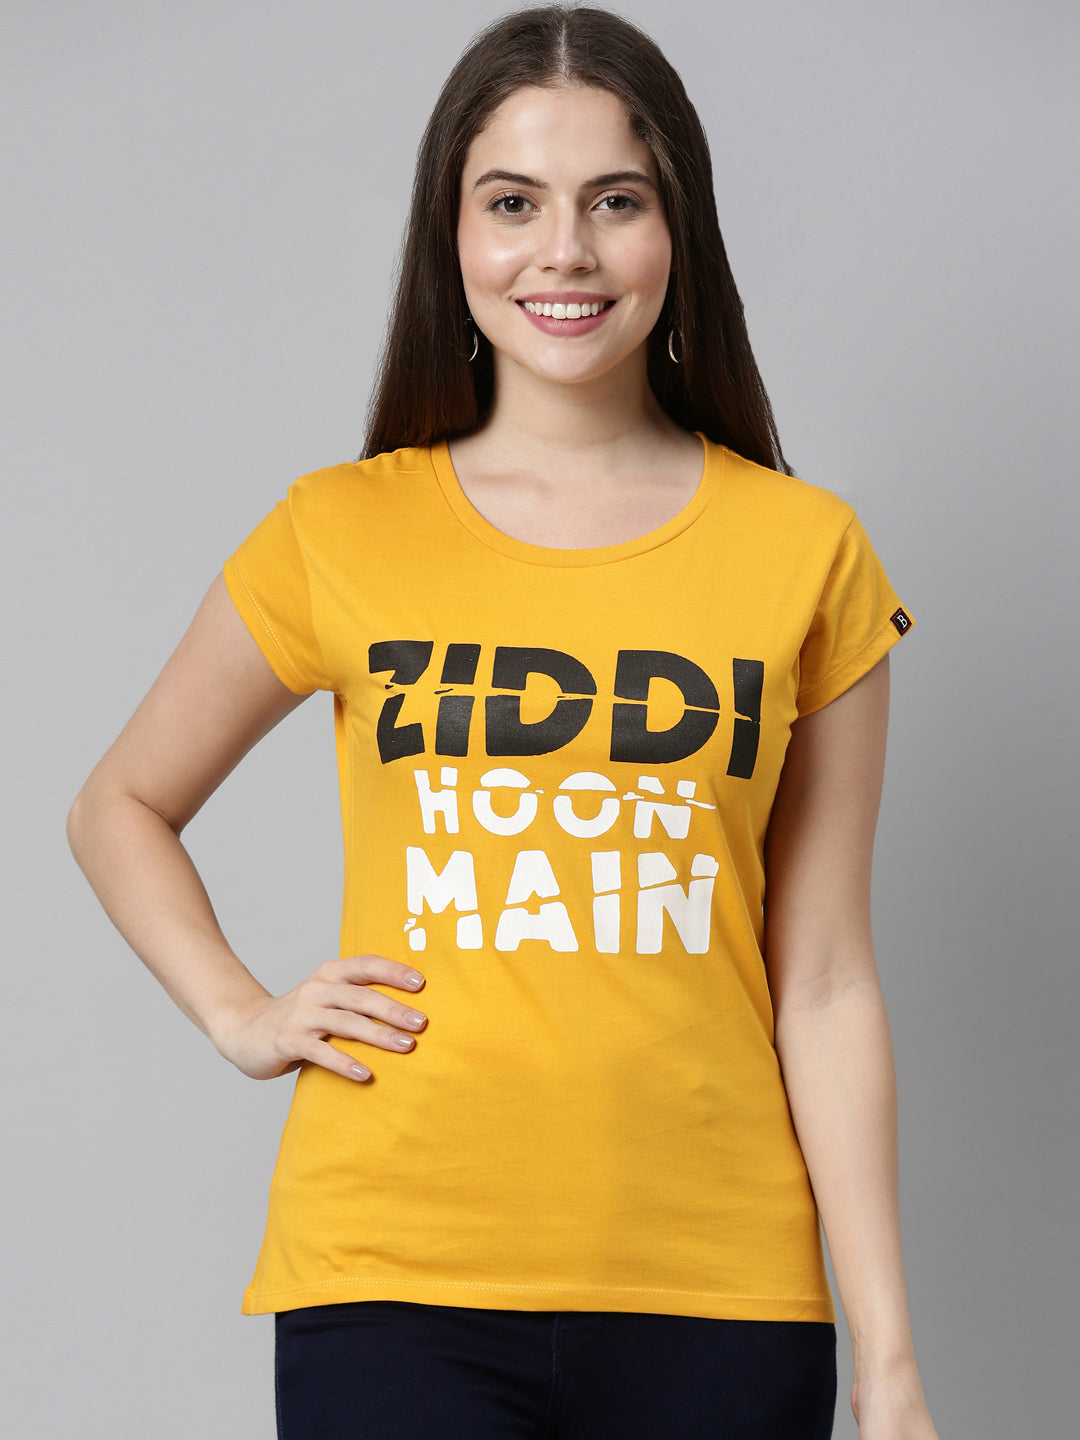 Ziddi Hoon Main T-Shirt Women's Graphic Tees Bushirt   